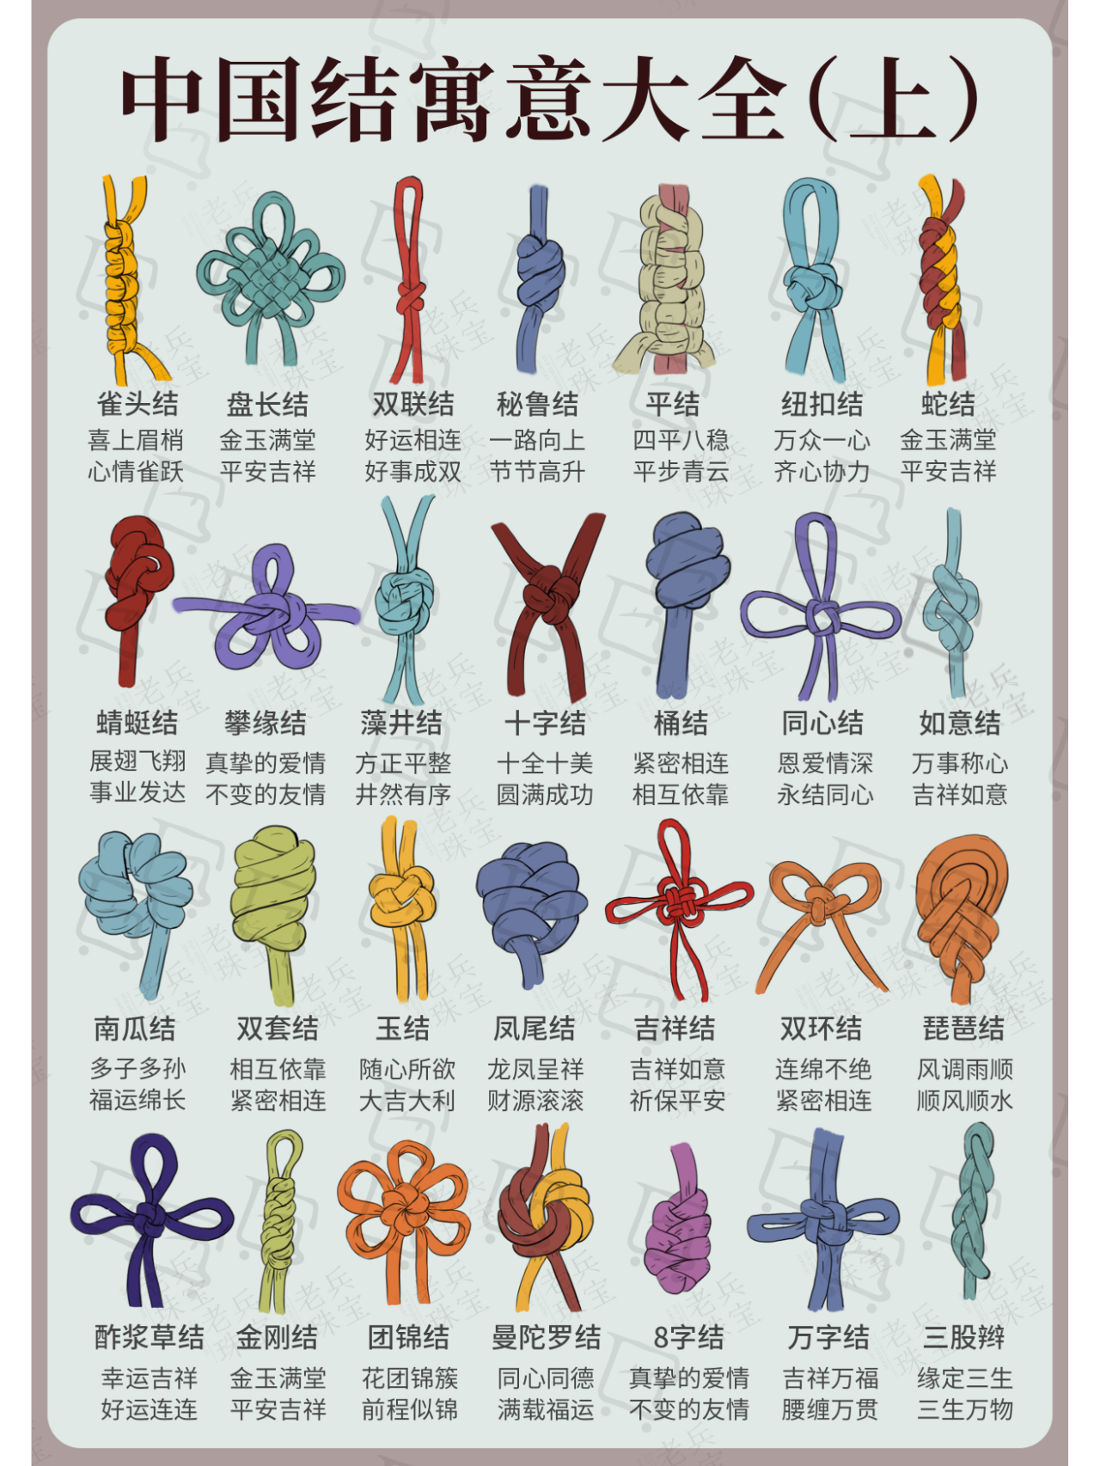 ivoci - Chinese Knot 中国结, Chinese Handcraft & Art - 4